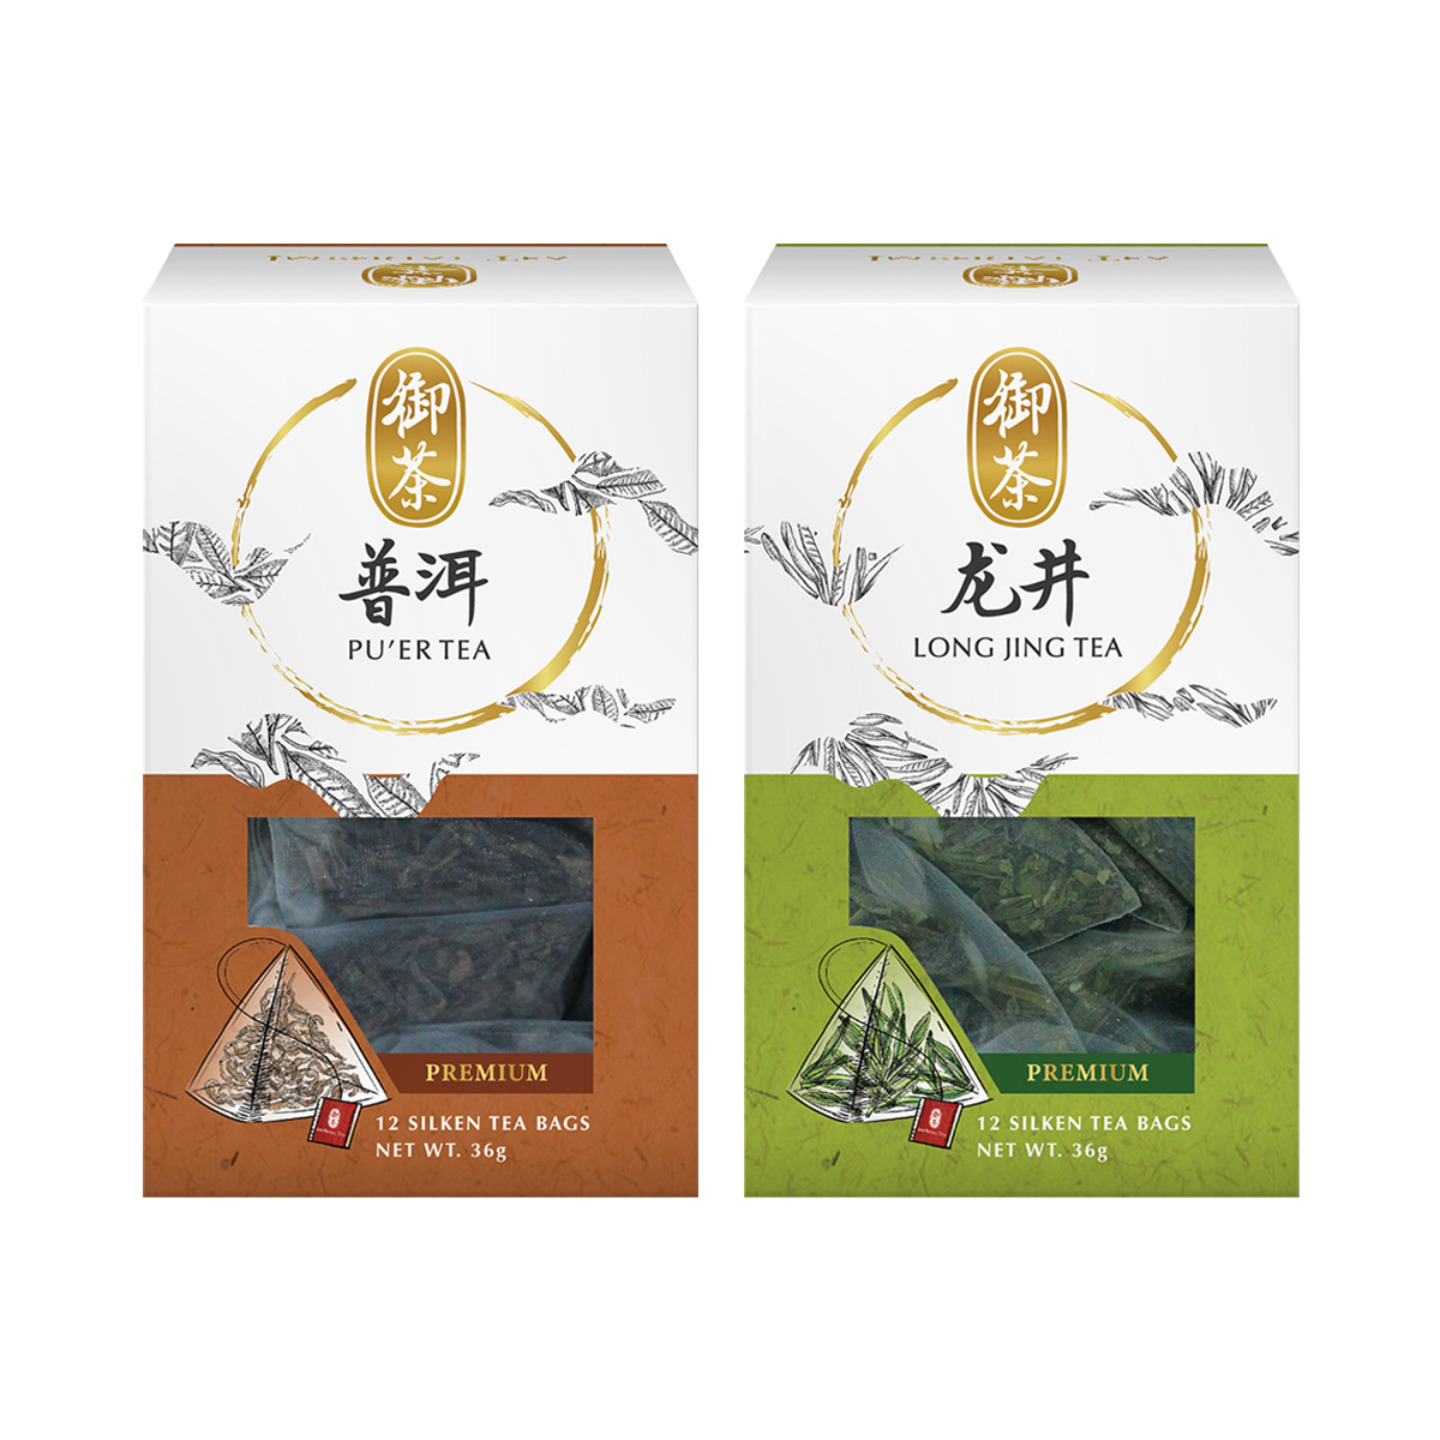 Imperial Tea Puer Tea & Long Jing Tea Bundle of 2